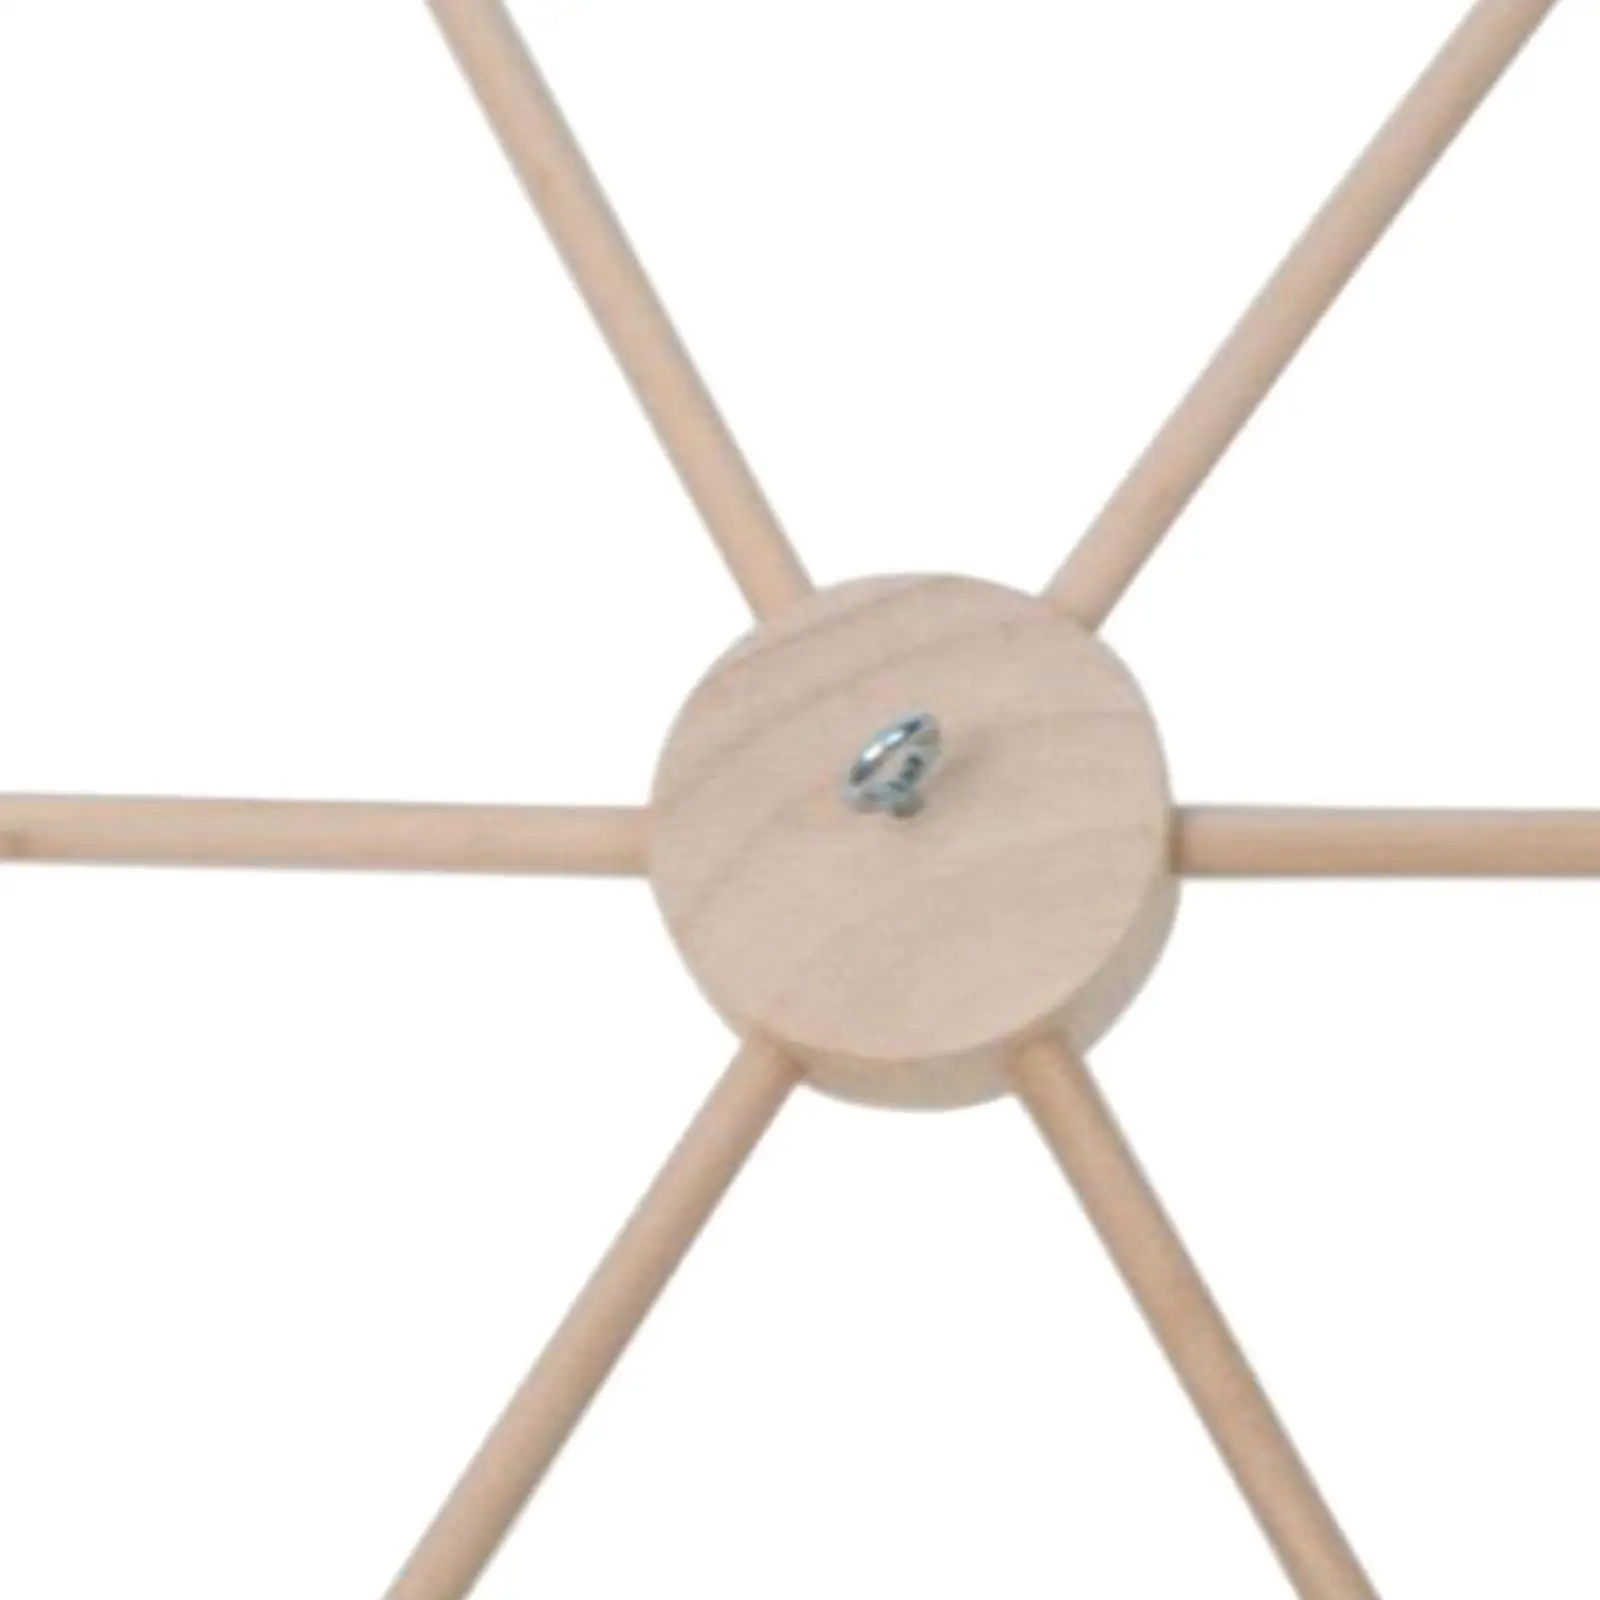 1 Set Wooden Mobile Bracket DIY Wind Chime Supplies Decor Crafts Pendant Props Hanger Frame Hanger for Infant Wall Hanging Home